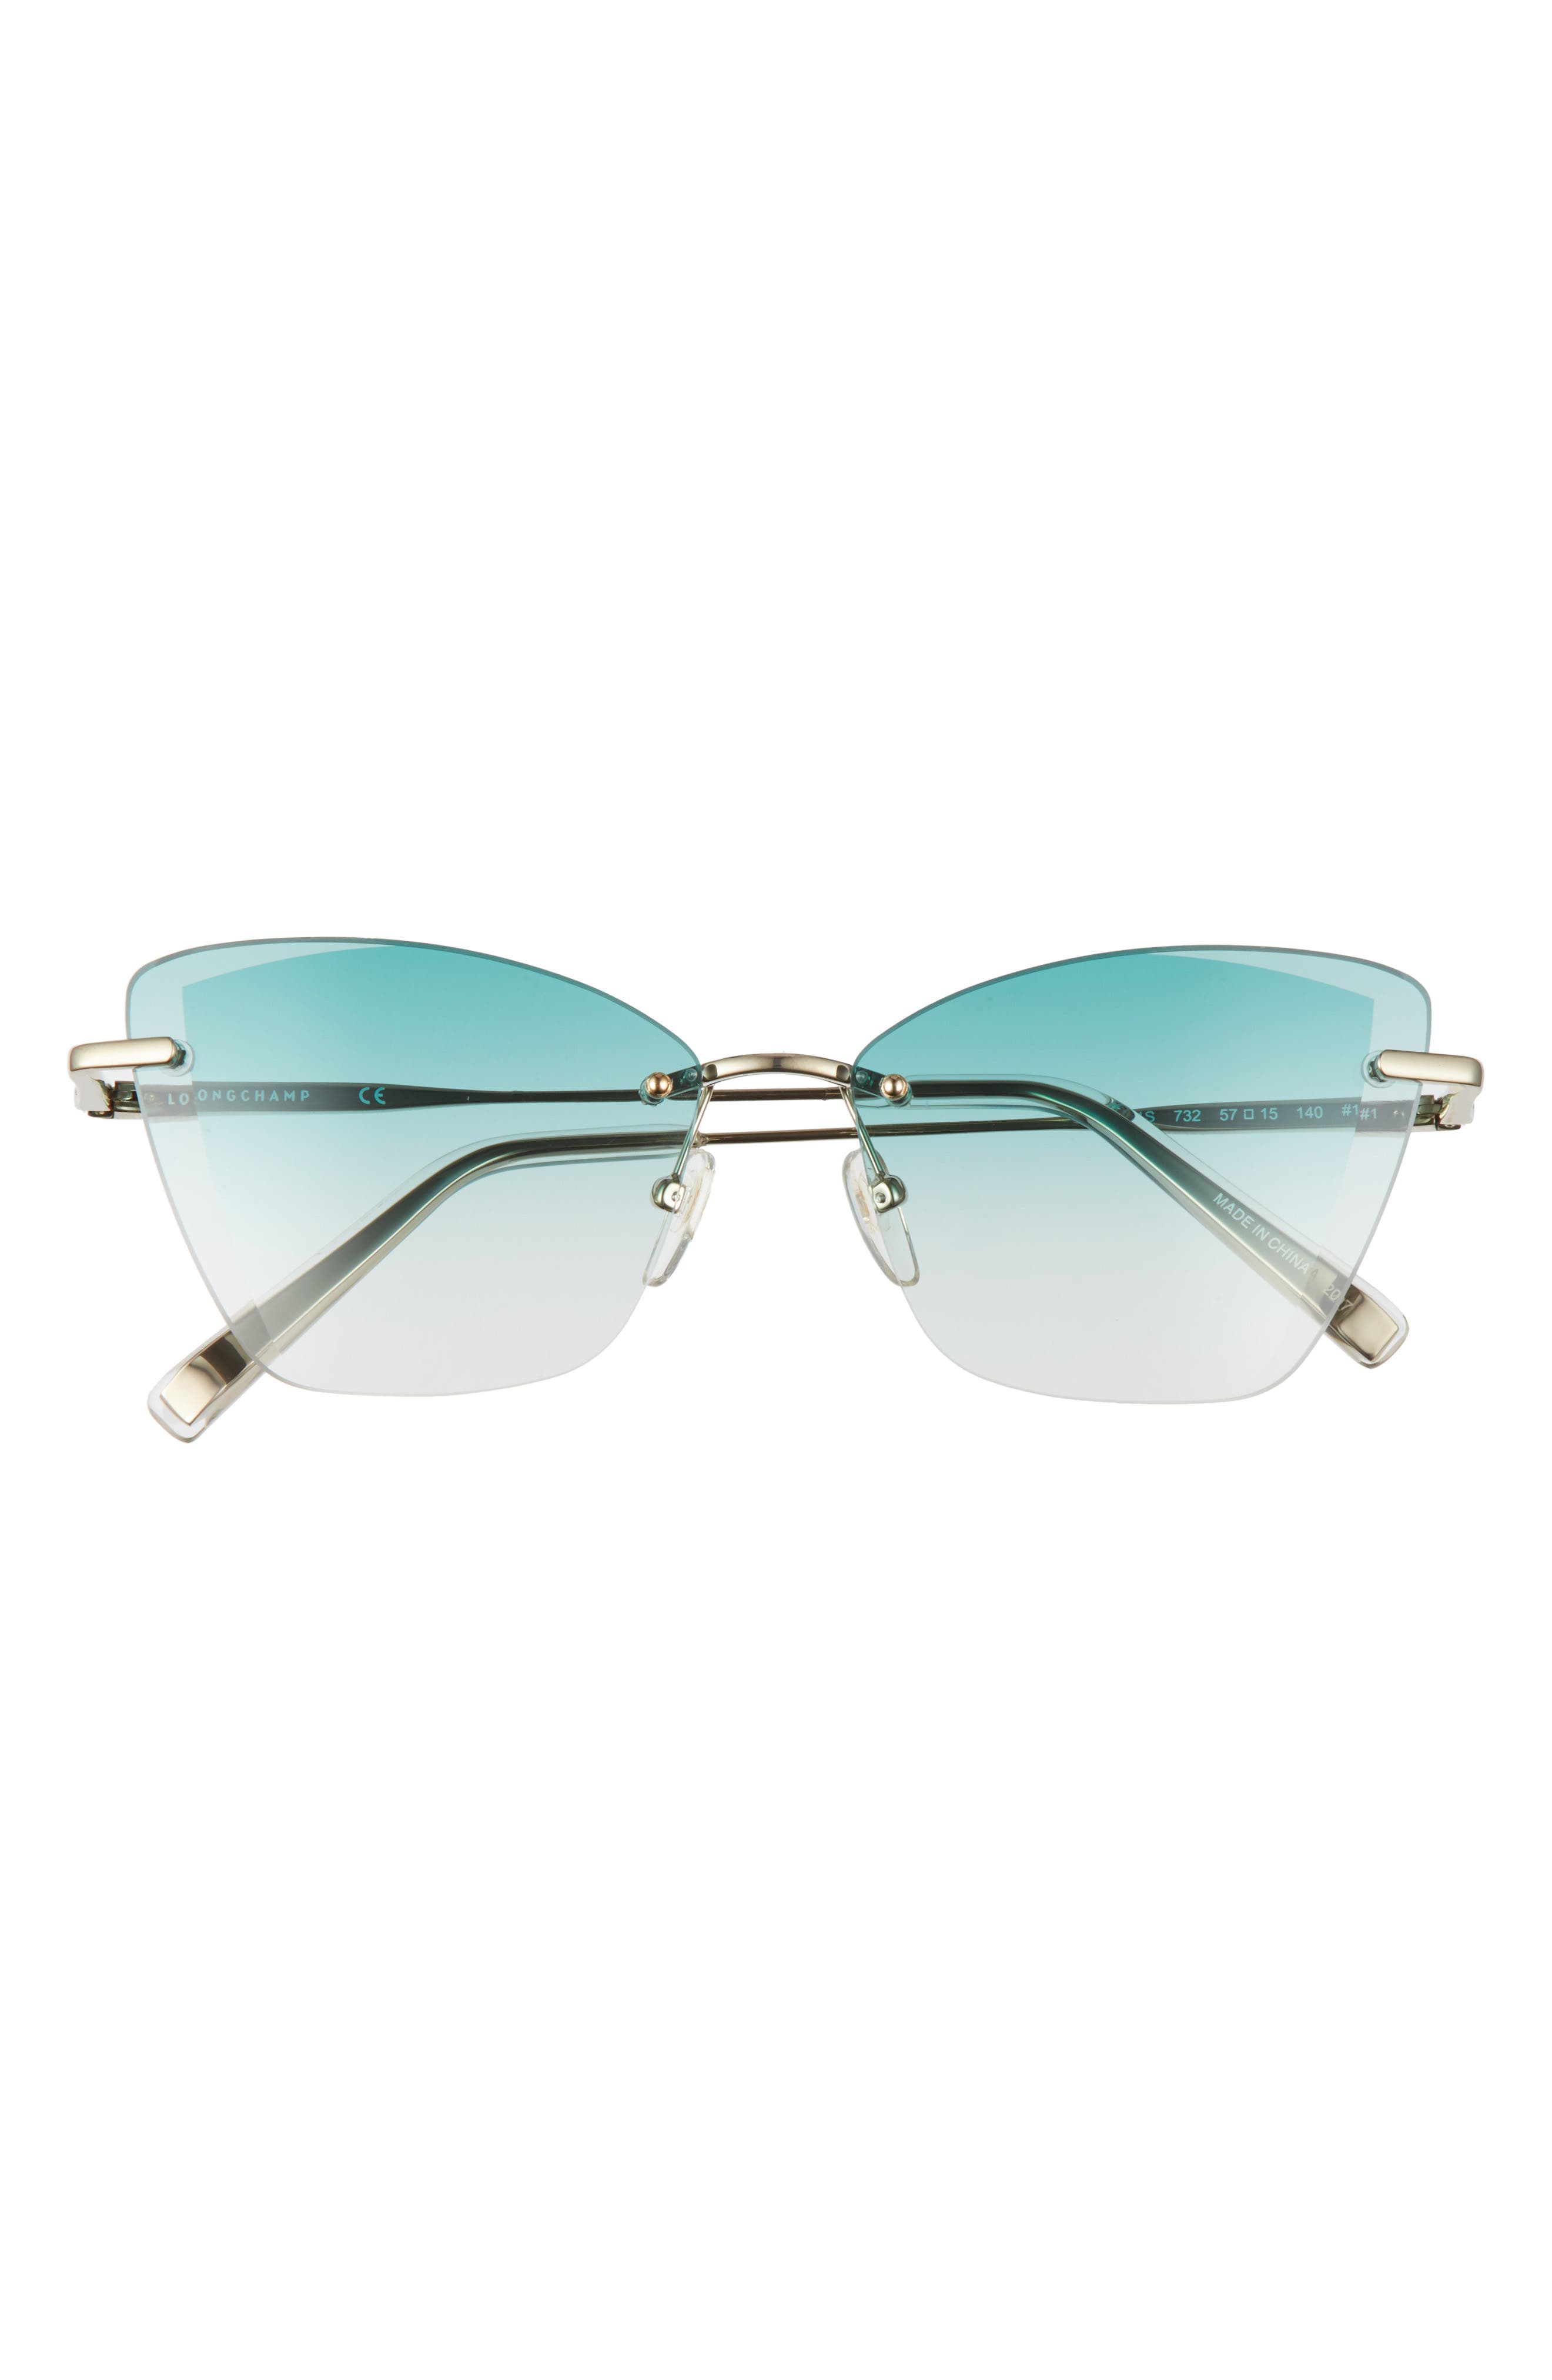 Longchamp Sunglasses for Women | Nordstrom